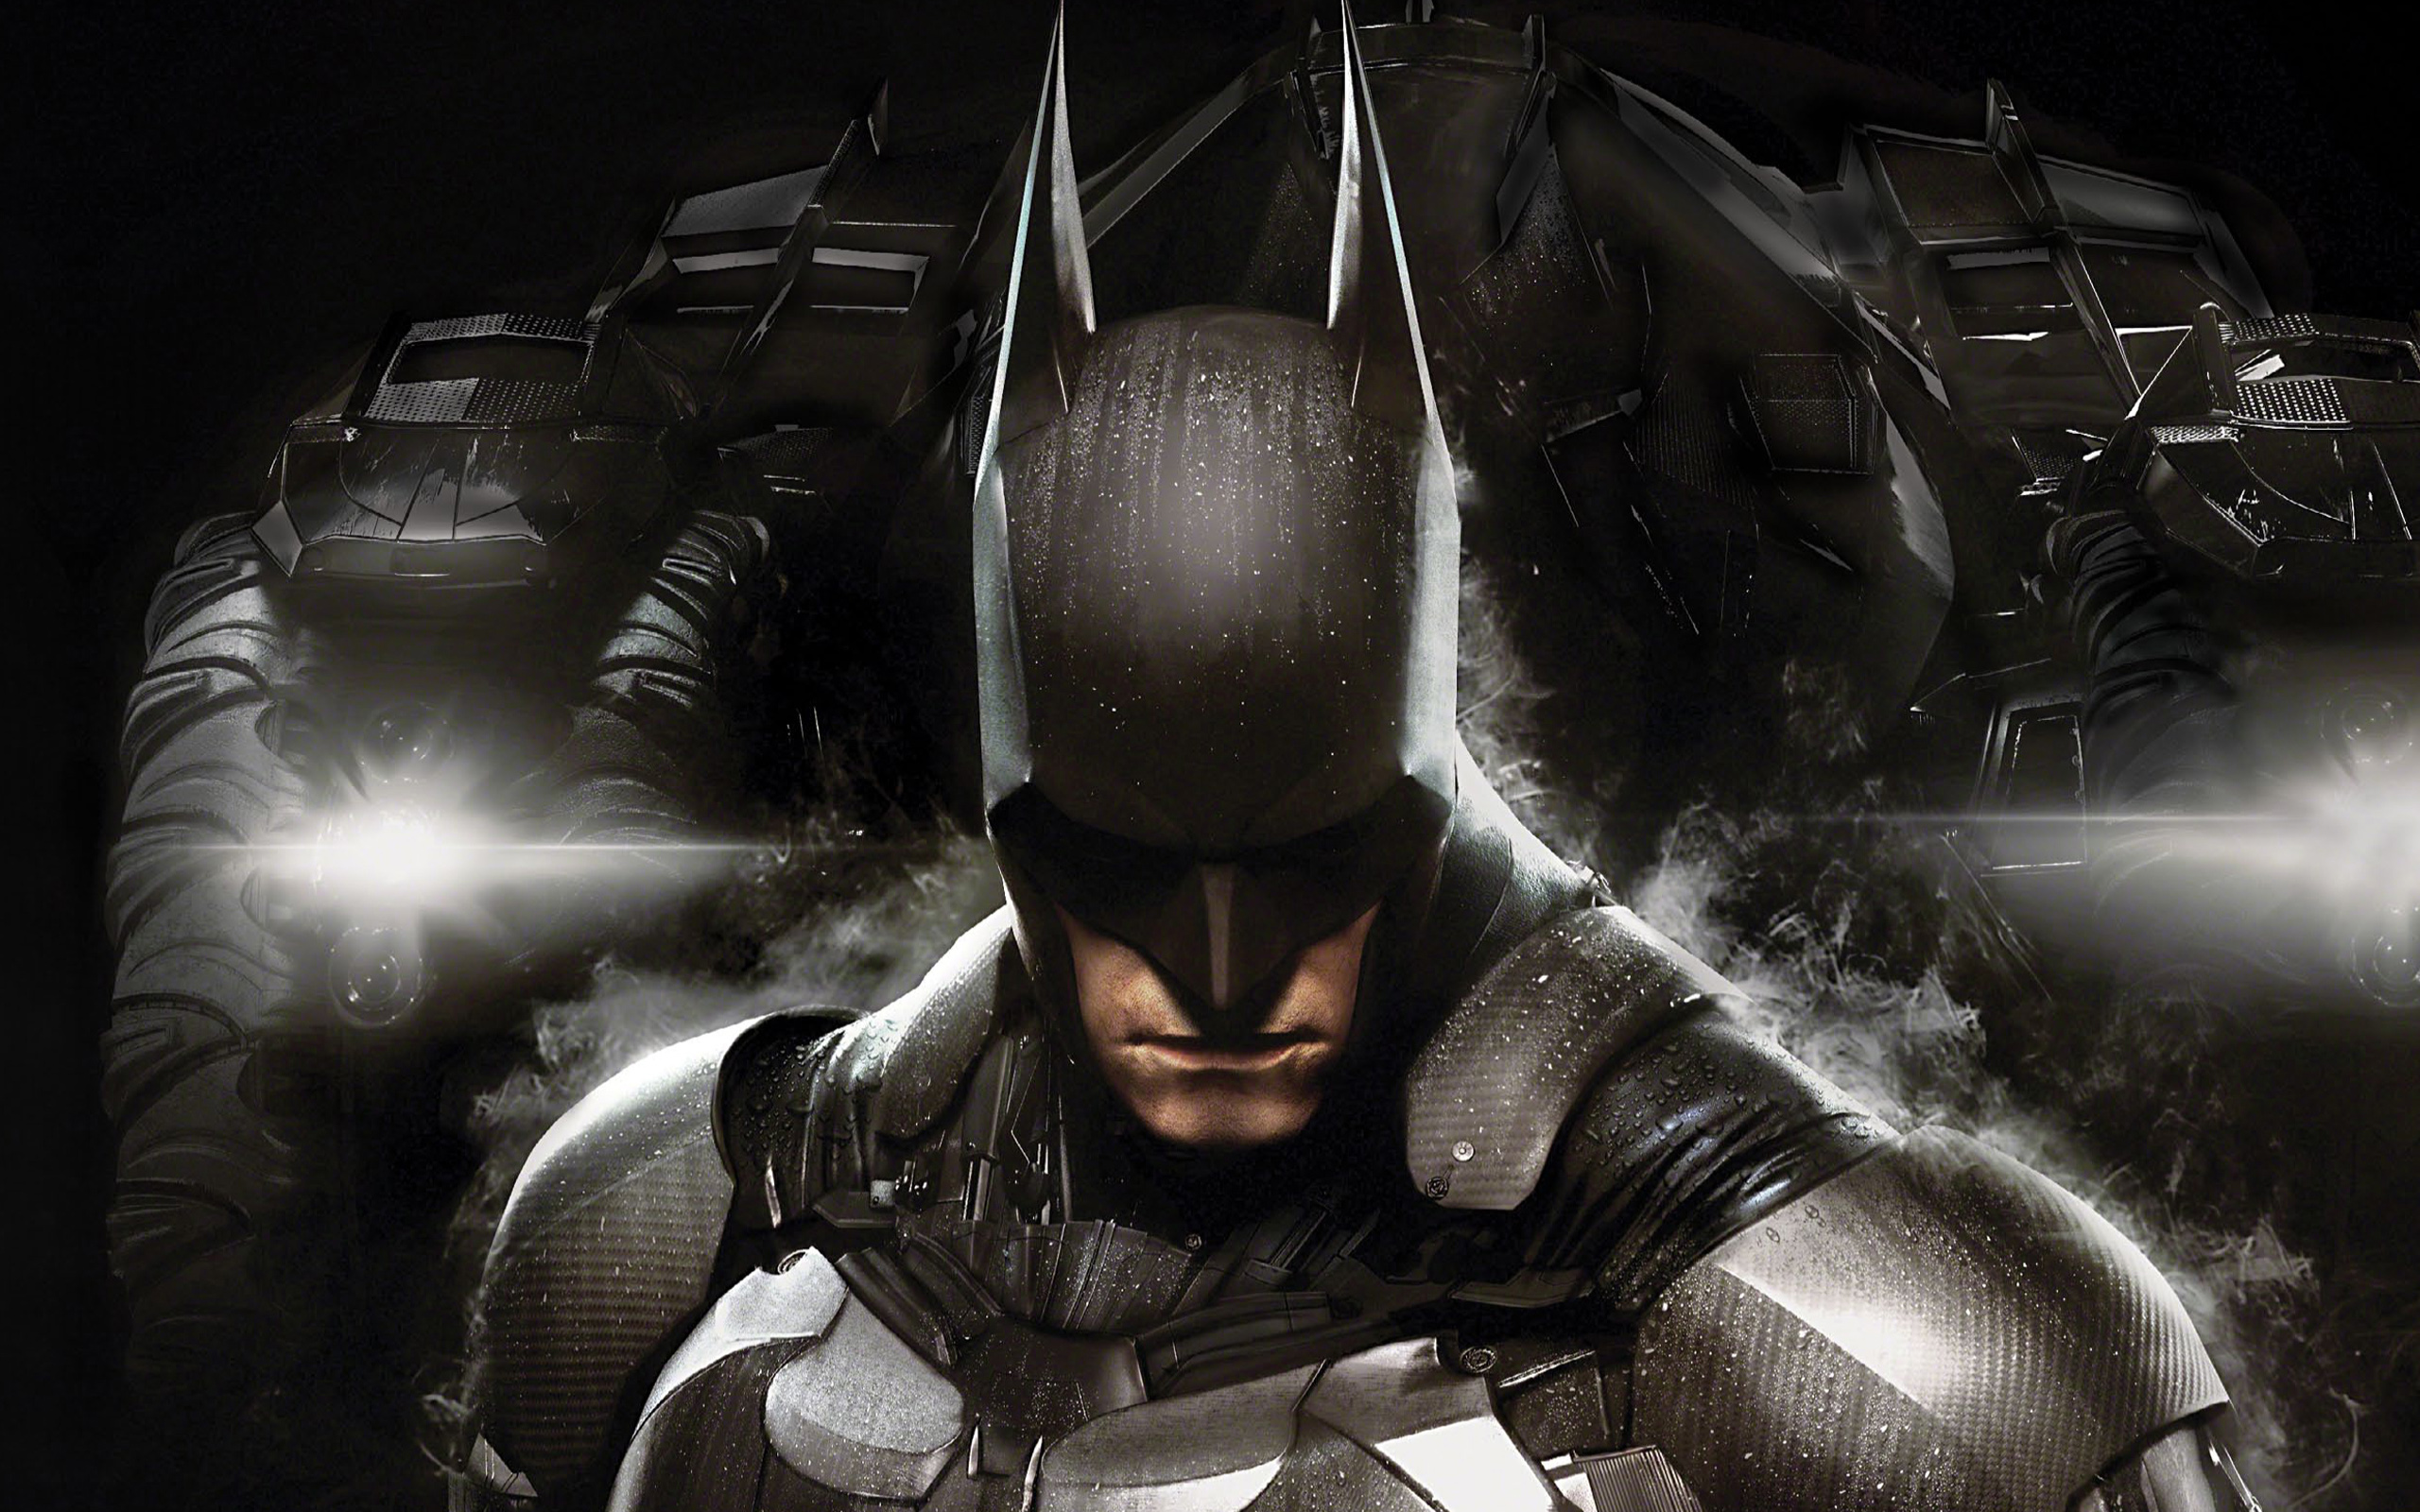 batman arkham knight wallpaper,personaggio fittizio,supereroe,gioco di avventura e azione,batman,cg artwork